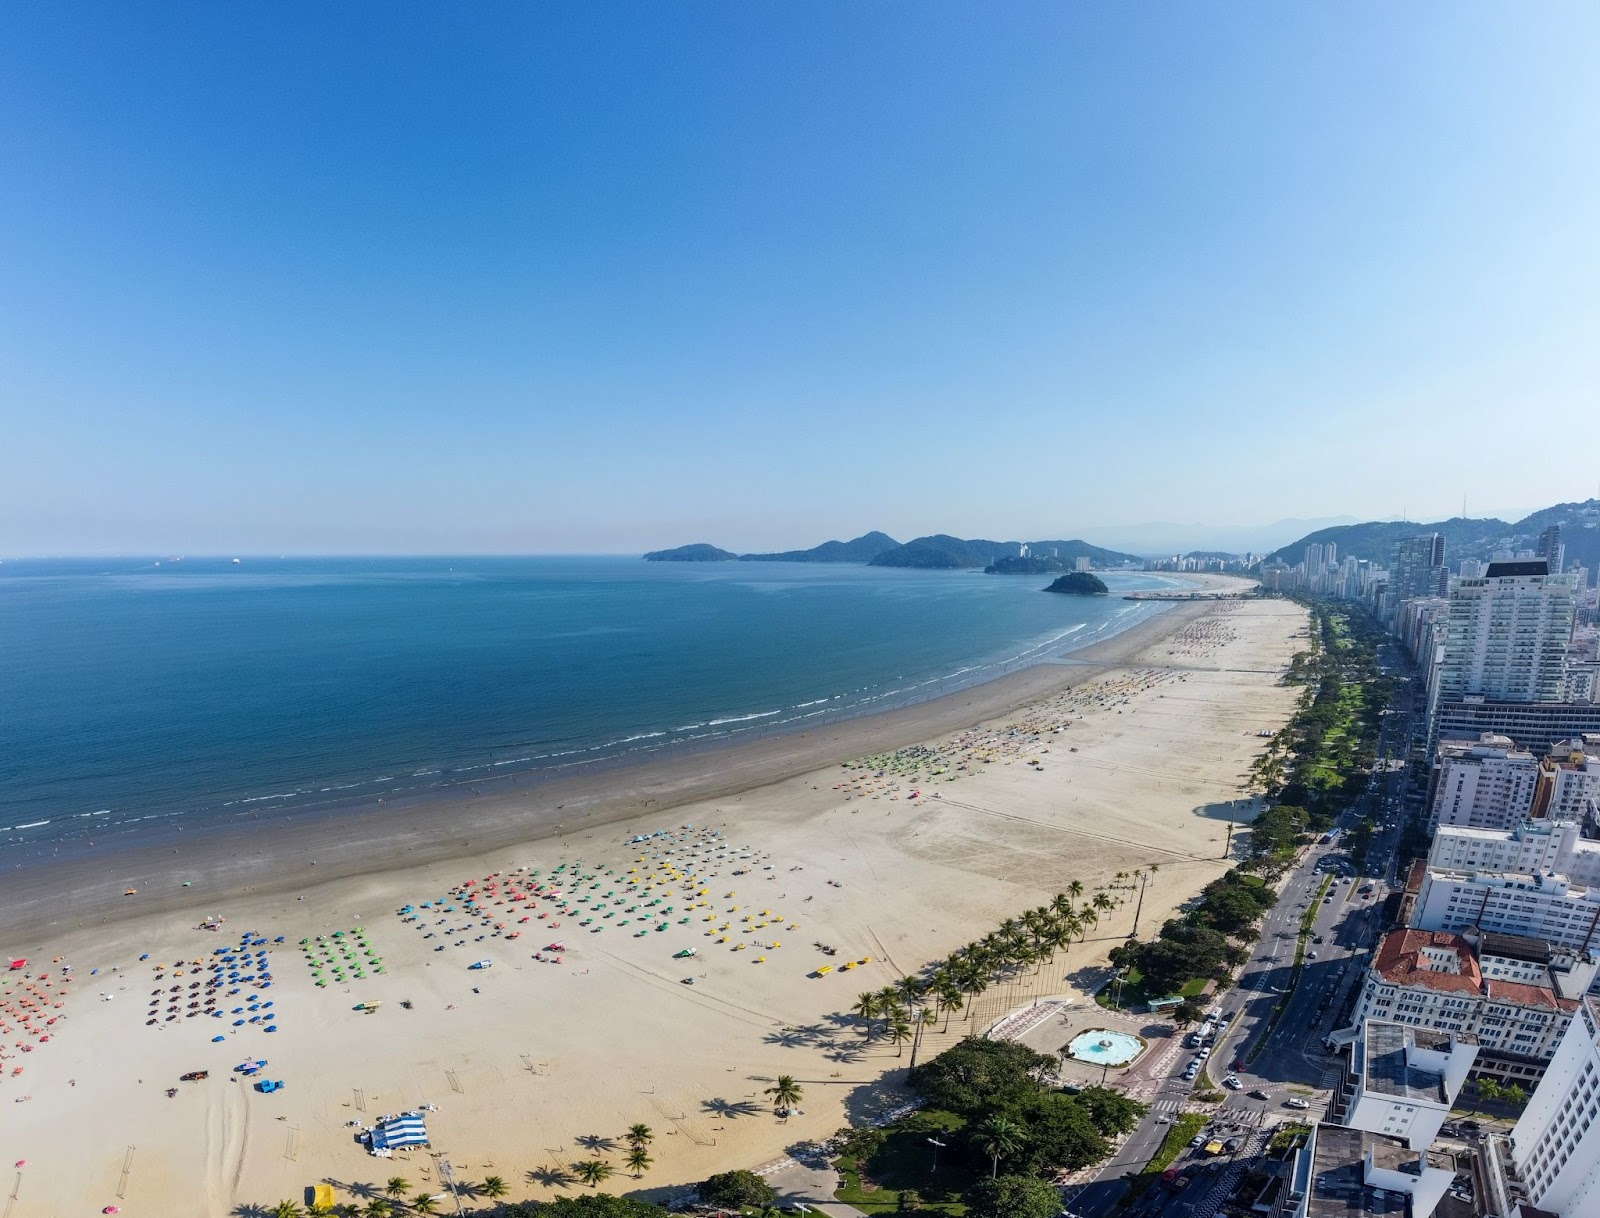 Vista aérea panorâmica da Praia do Gonzaga. Diversas cadeiras de praia de diferentes cores na extensa faixa de areia em frente ao mar azul.